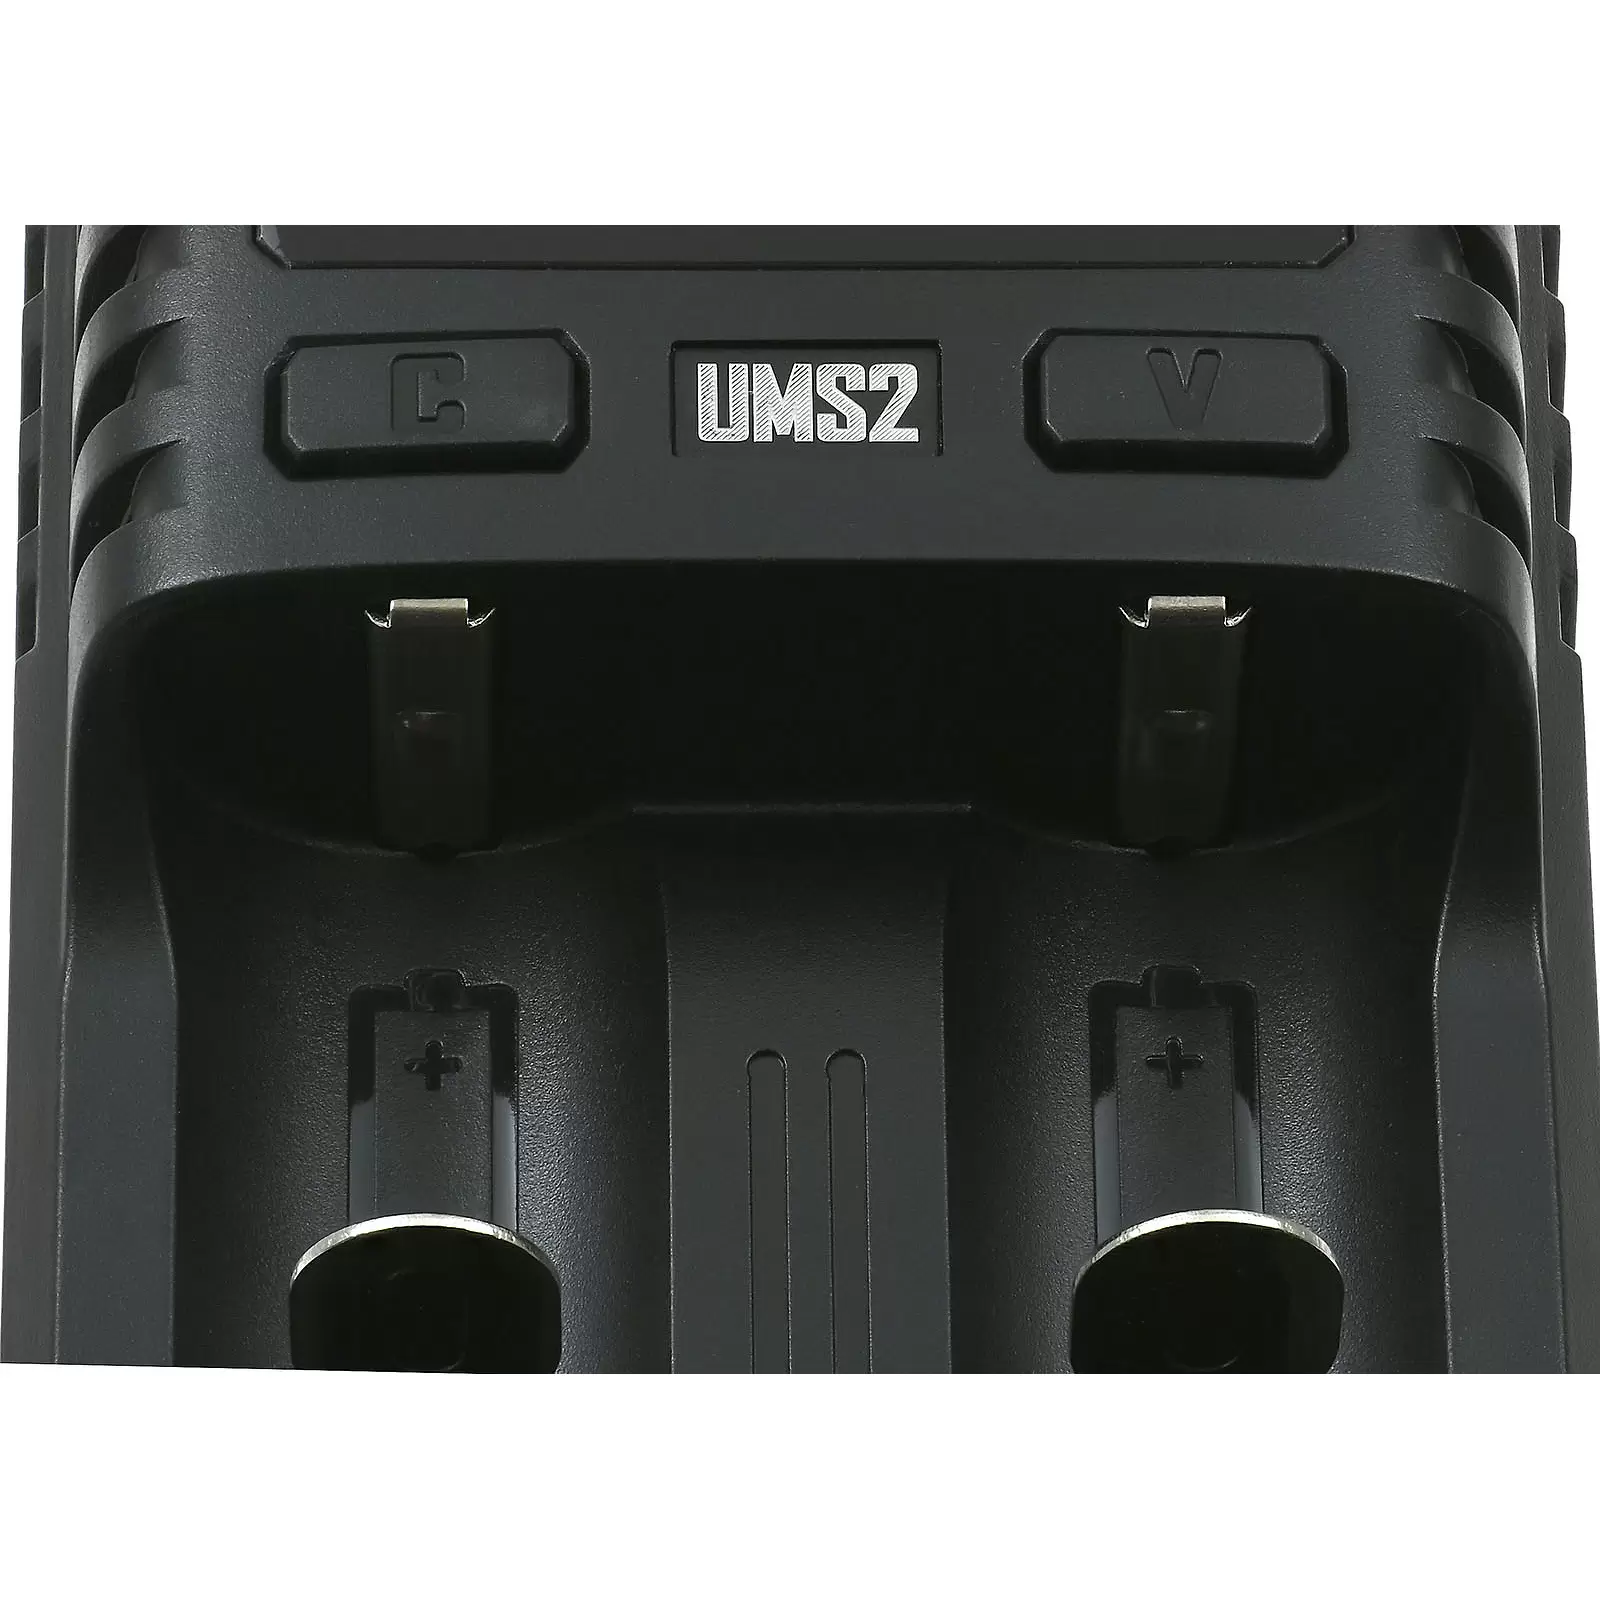 USB-Schnell-Ladegerät Nitecore UMS2,LCD-Display, 2 Ladeschächte u.a. für Li-Ion Akkus